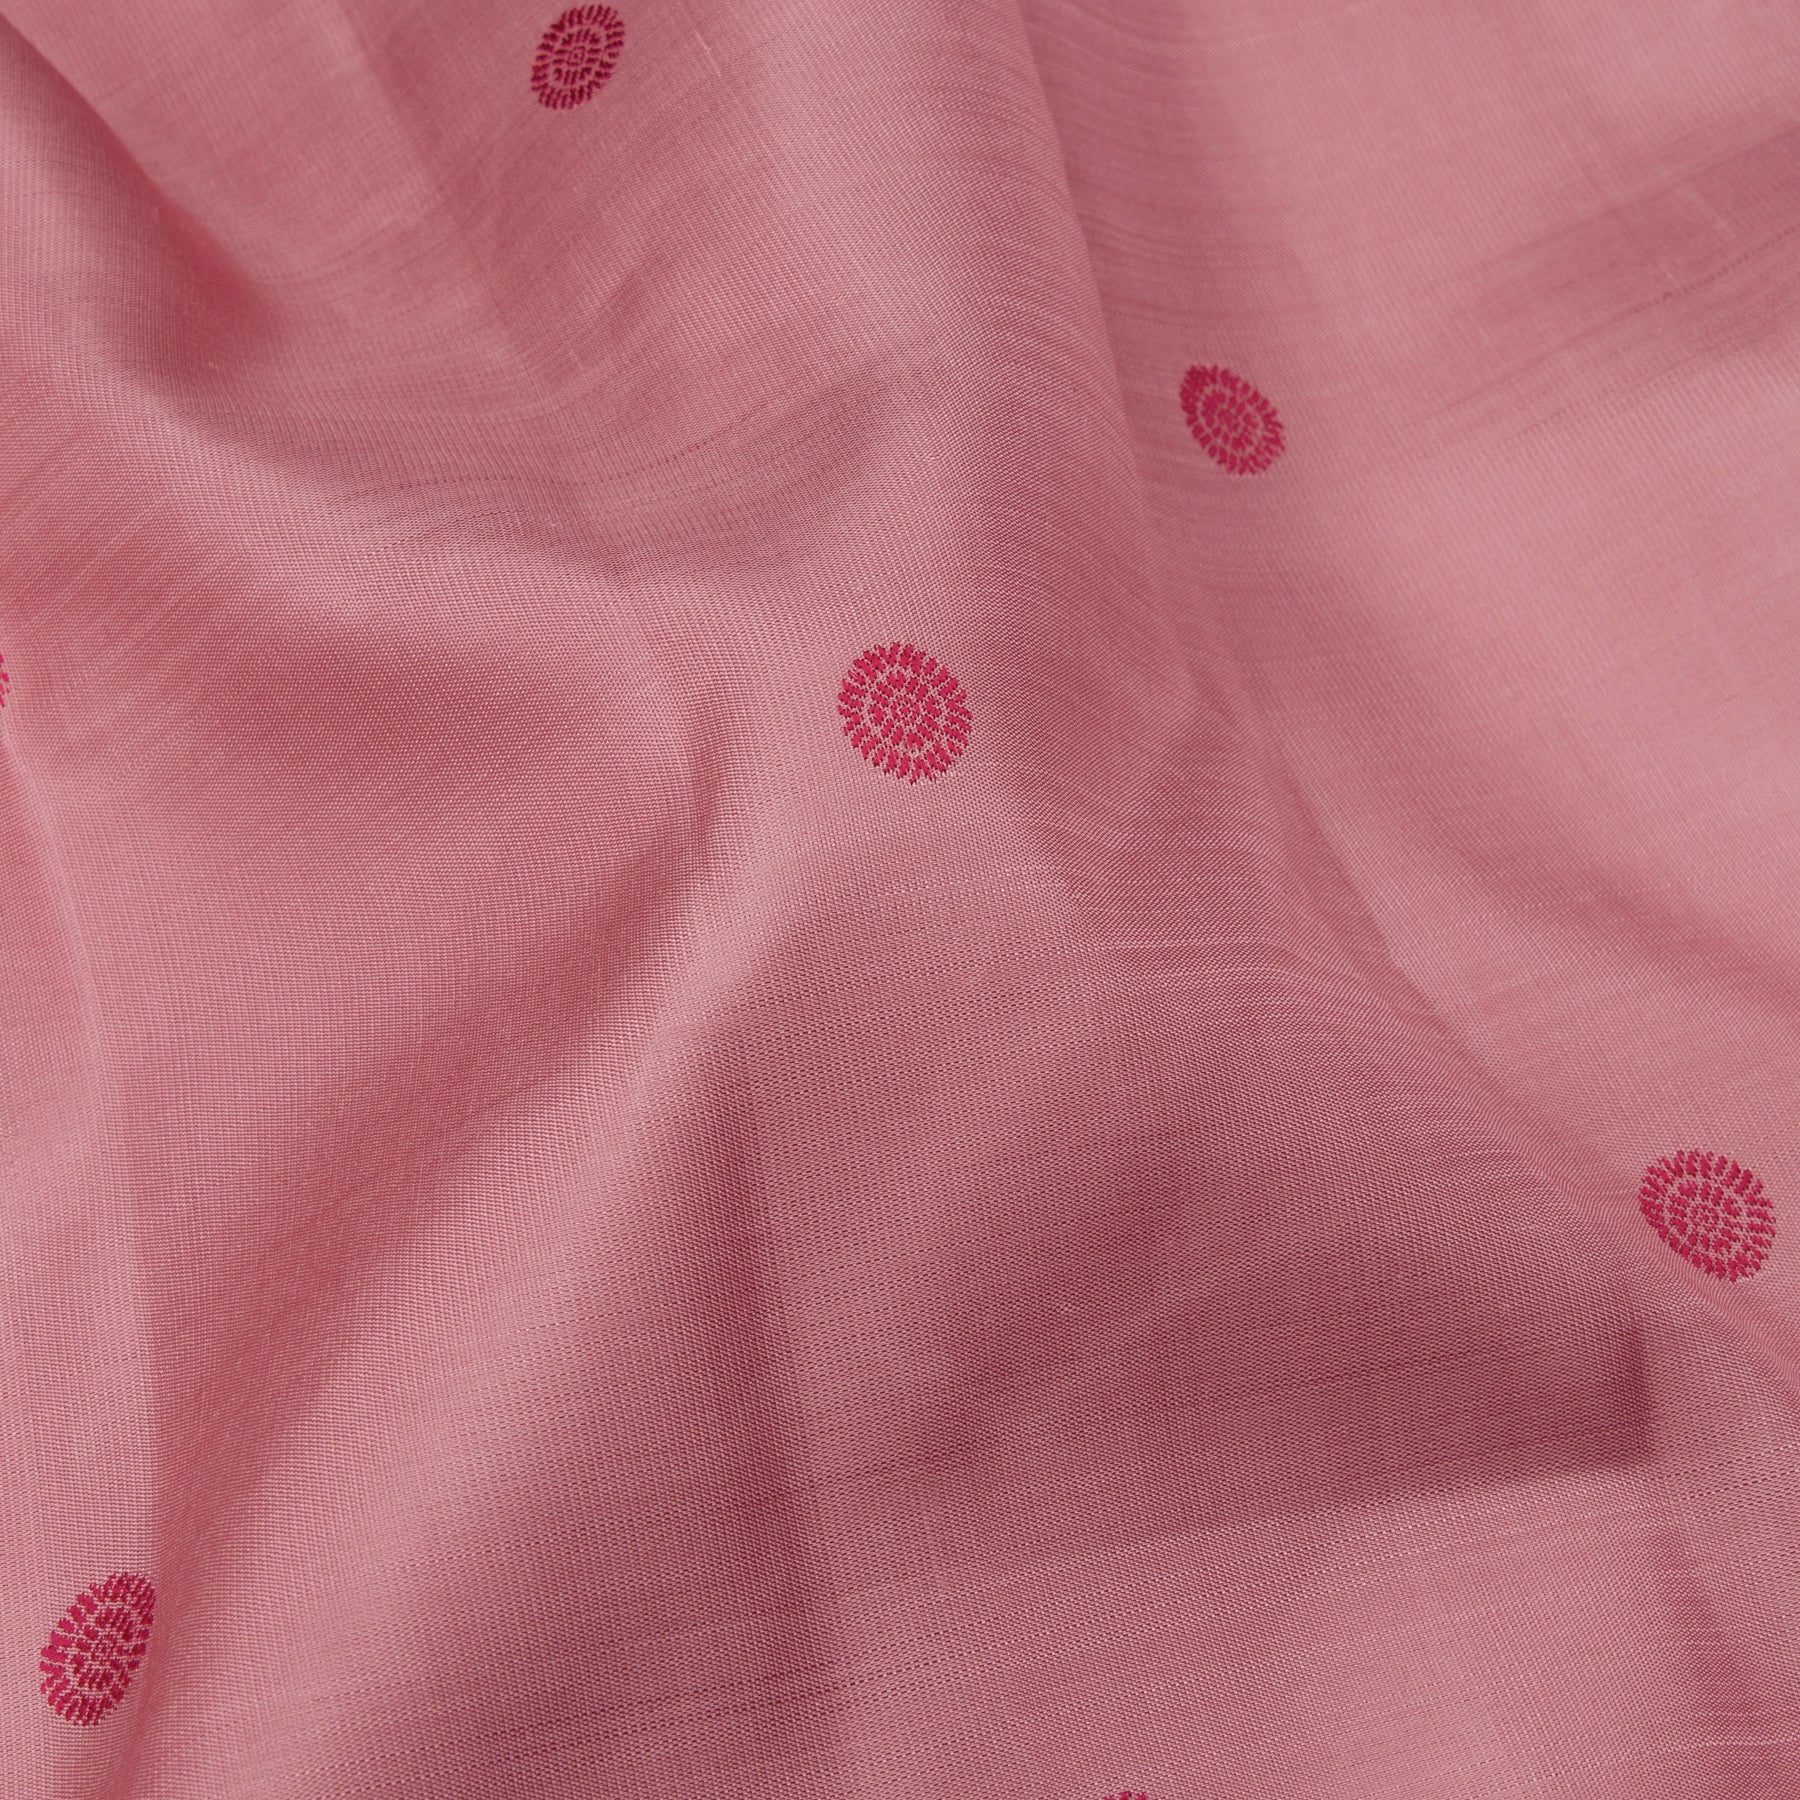 Kanakavalli Kanjivaram Silk Sari 23-110-HS001-14316 - Fabric View